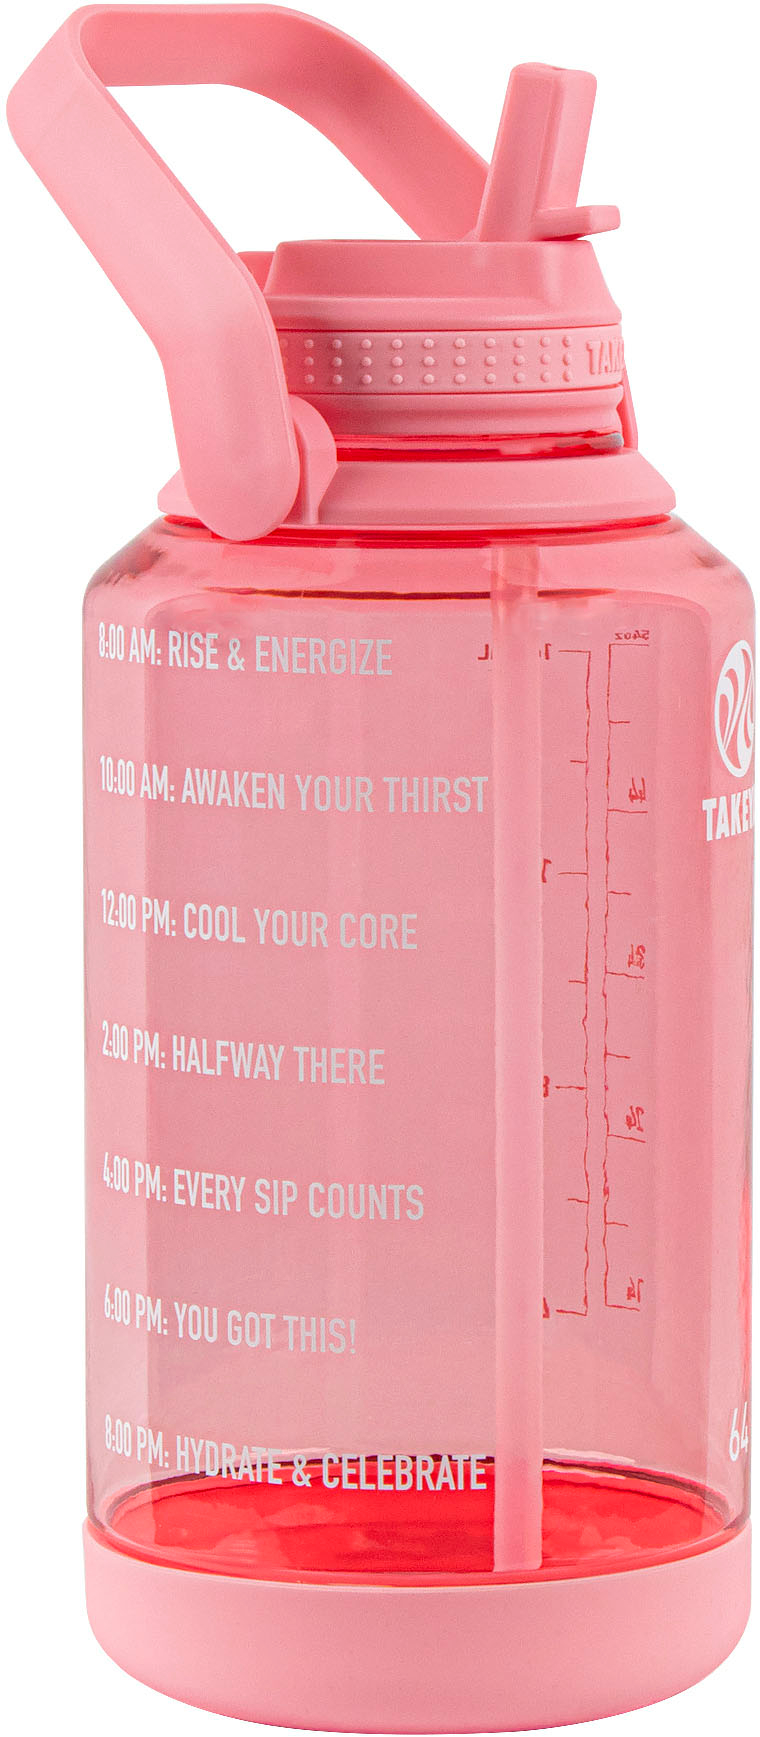 Best Buy: Takeya Actives 18oz Straw Bottle Blush 51201